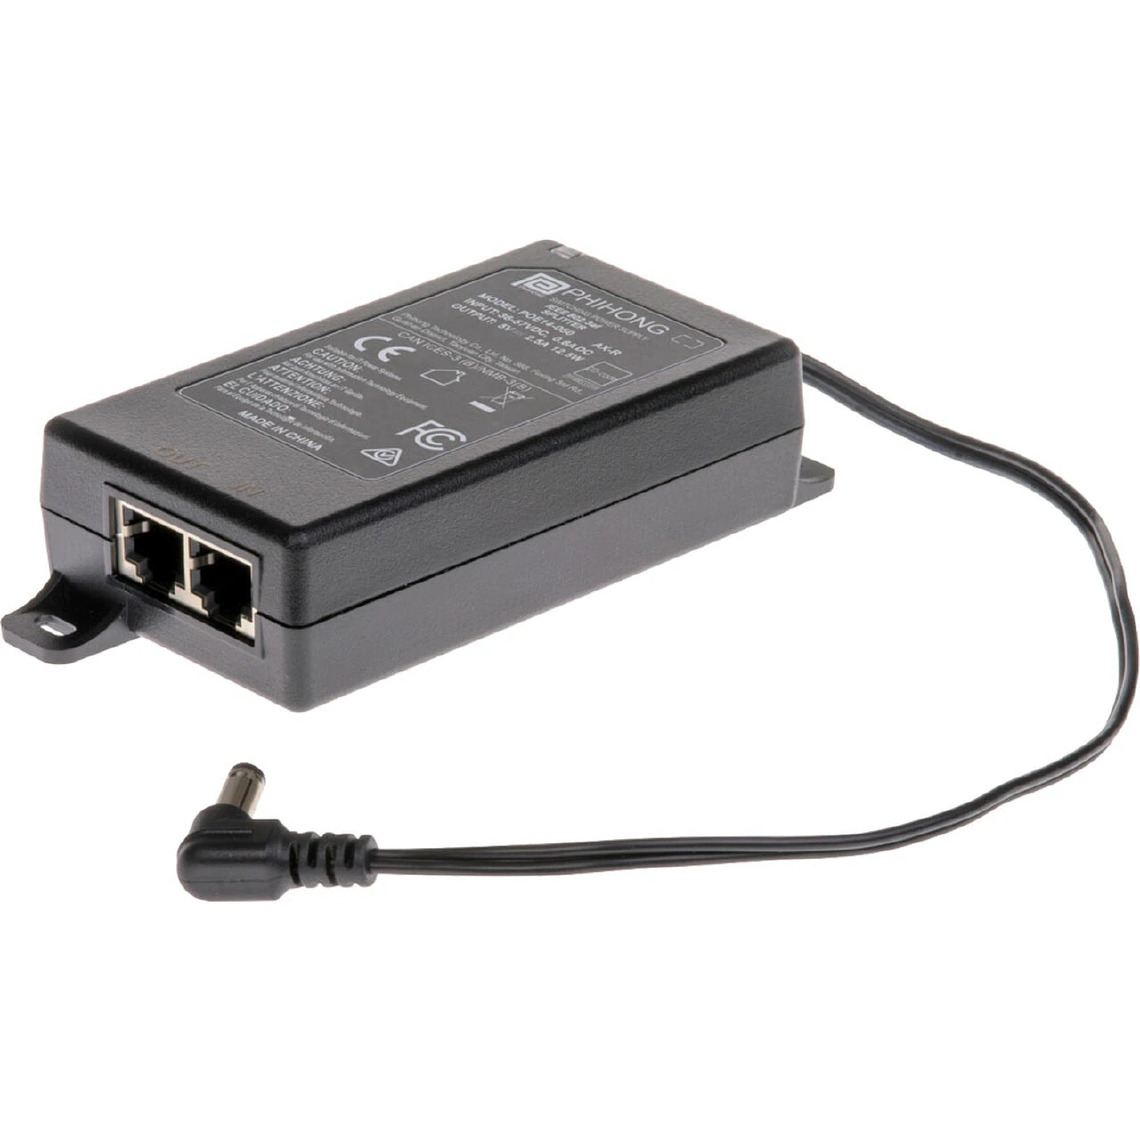 Axis - AXIS - Répartiteur alimentation sous Ethernet (Power over Ethernet - PoE) - 36 - 57 V - 12.5 Watt - connecteurs de sortie : 2 - pour AXIS T8705 Video Decoder - Bracelet connecté